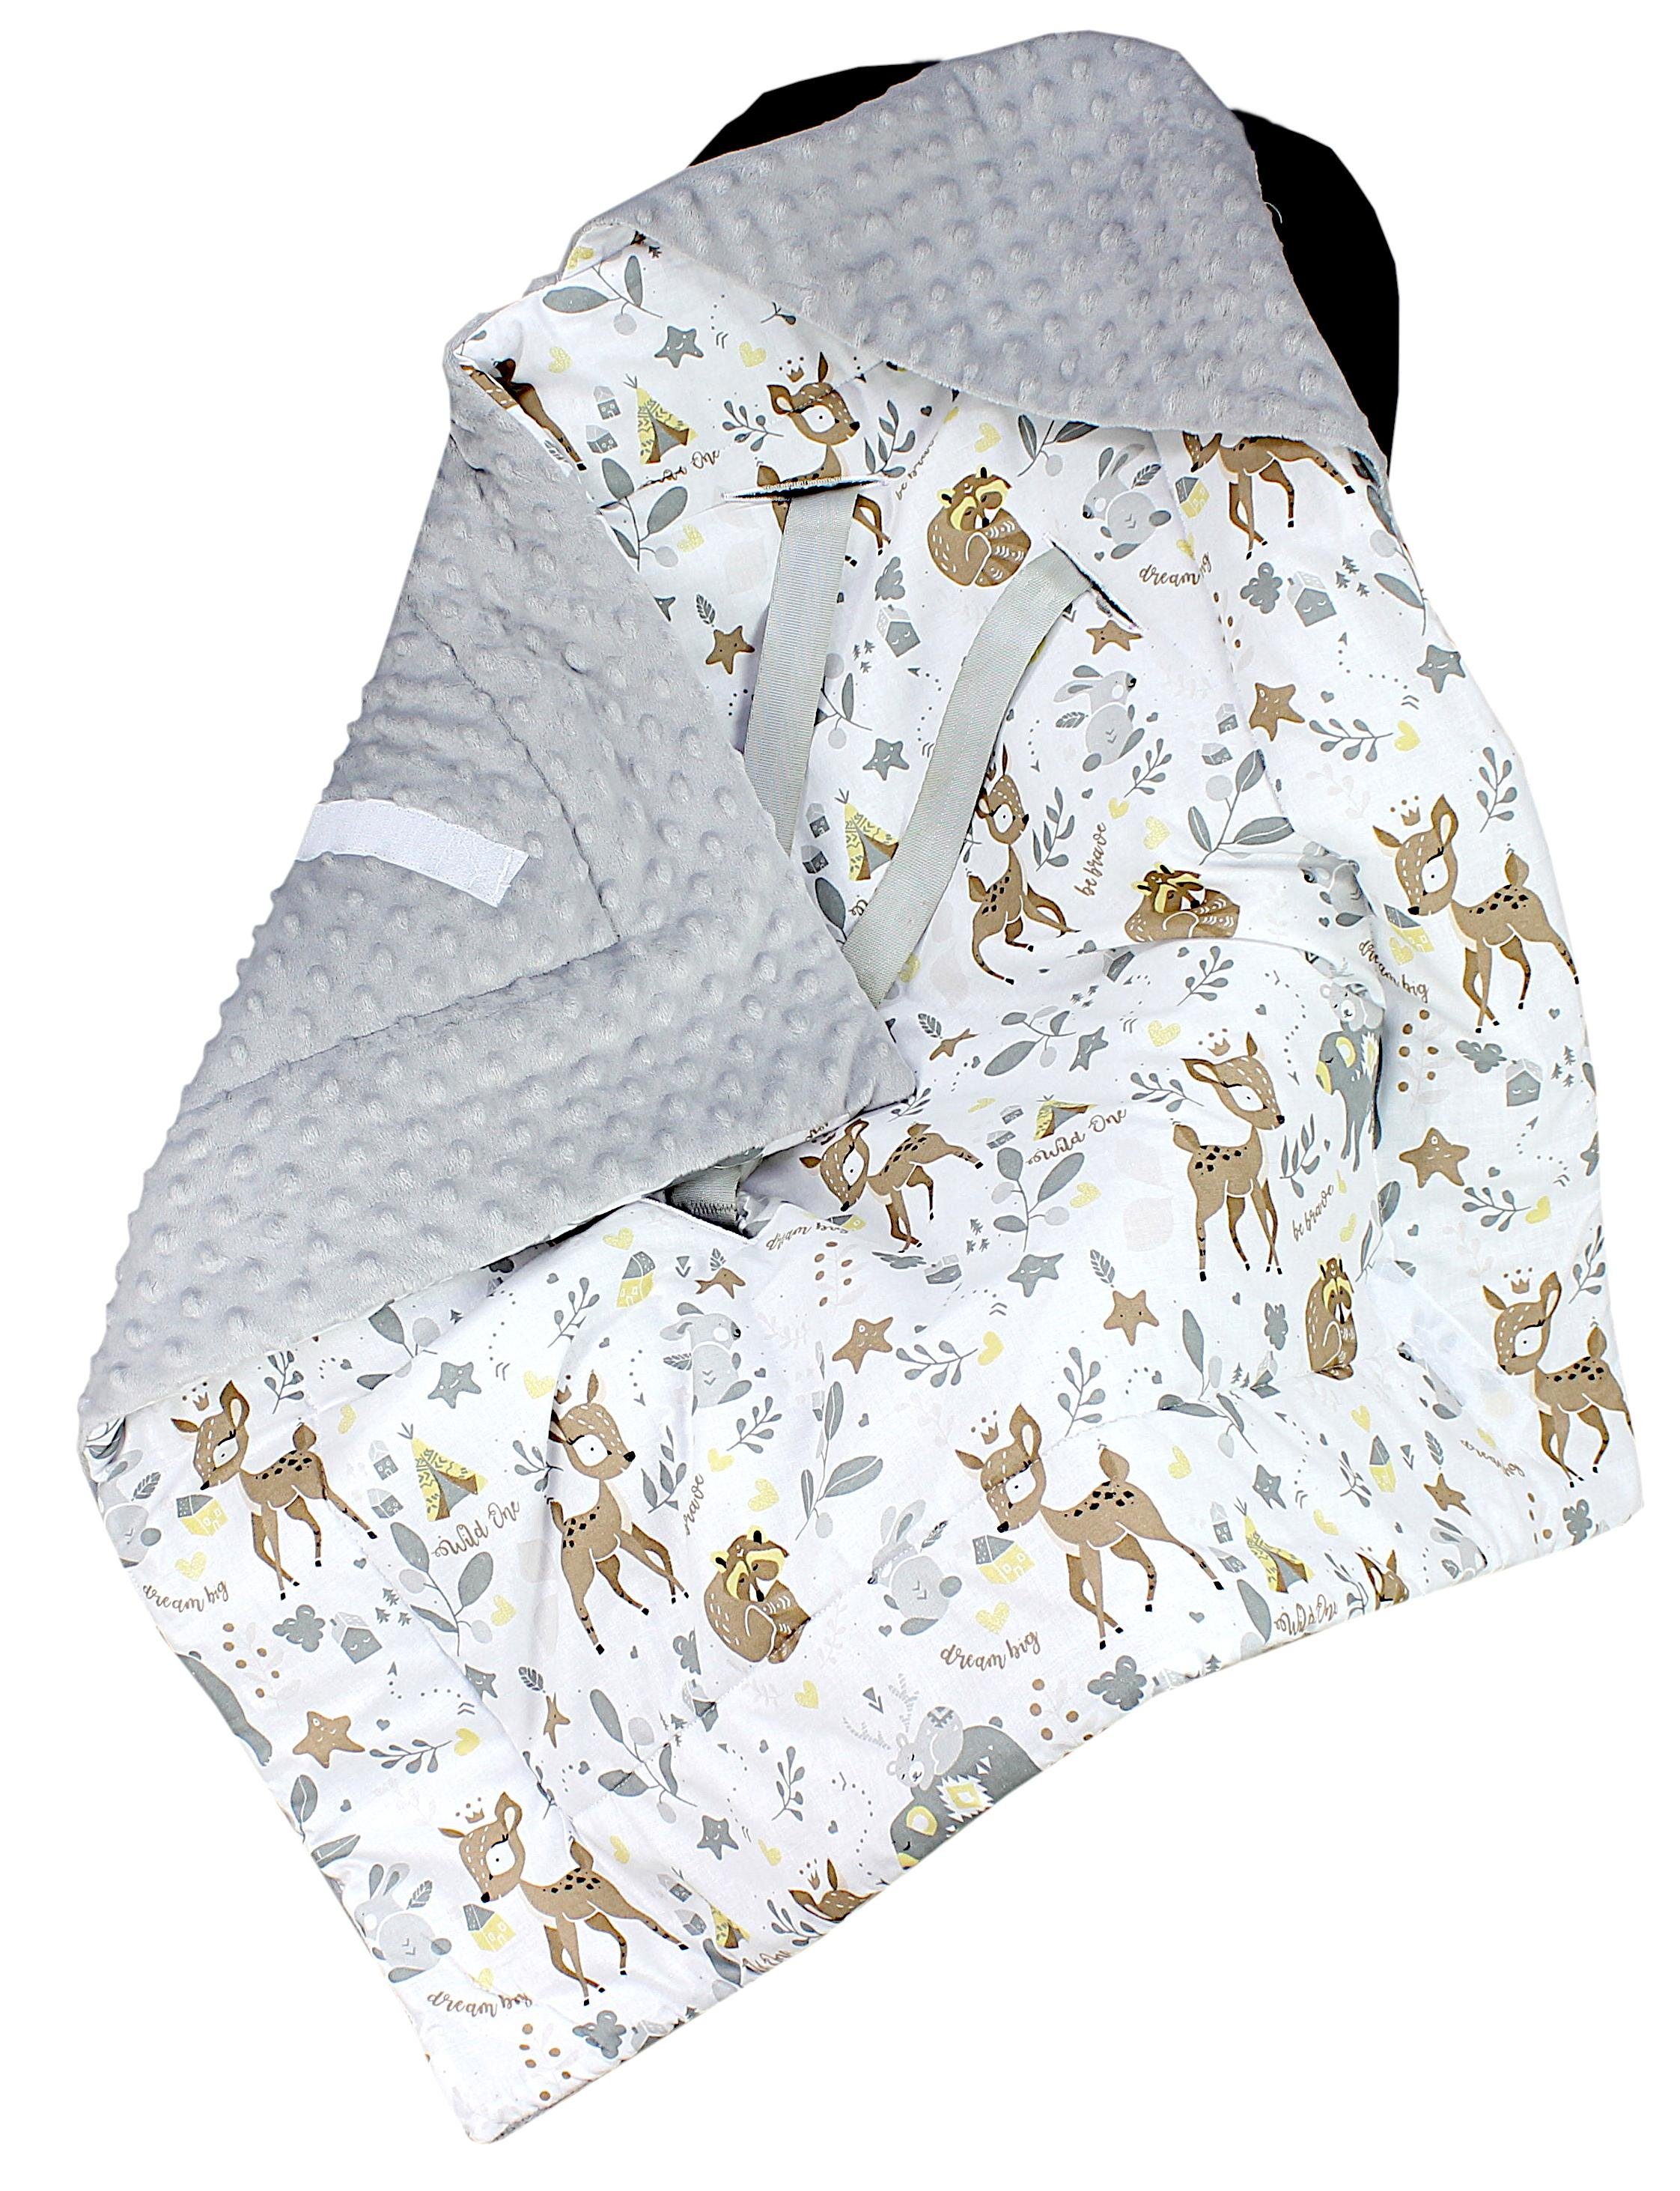 Einschlagdecke Baby Winter Einschlagdecke für Babyschale Wattiert Minky, TupTam